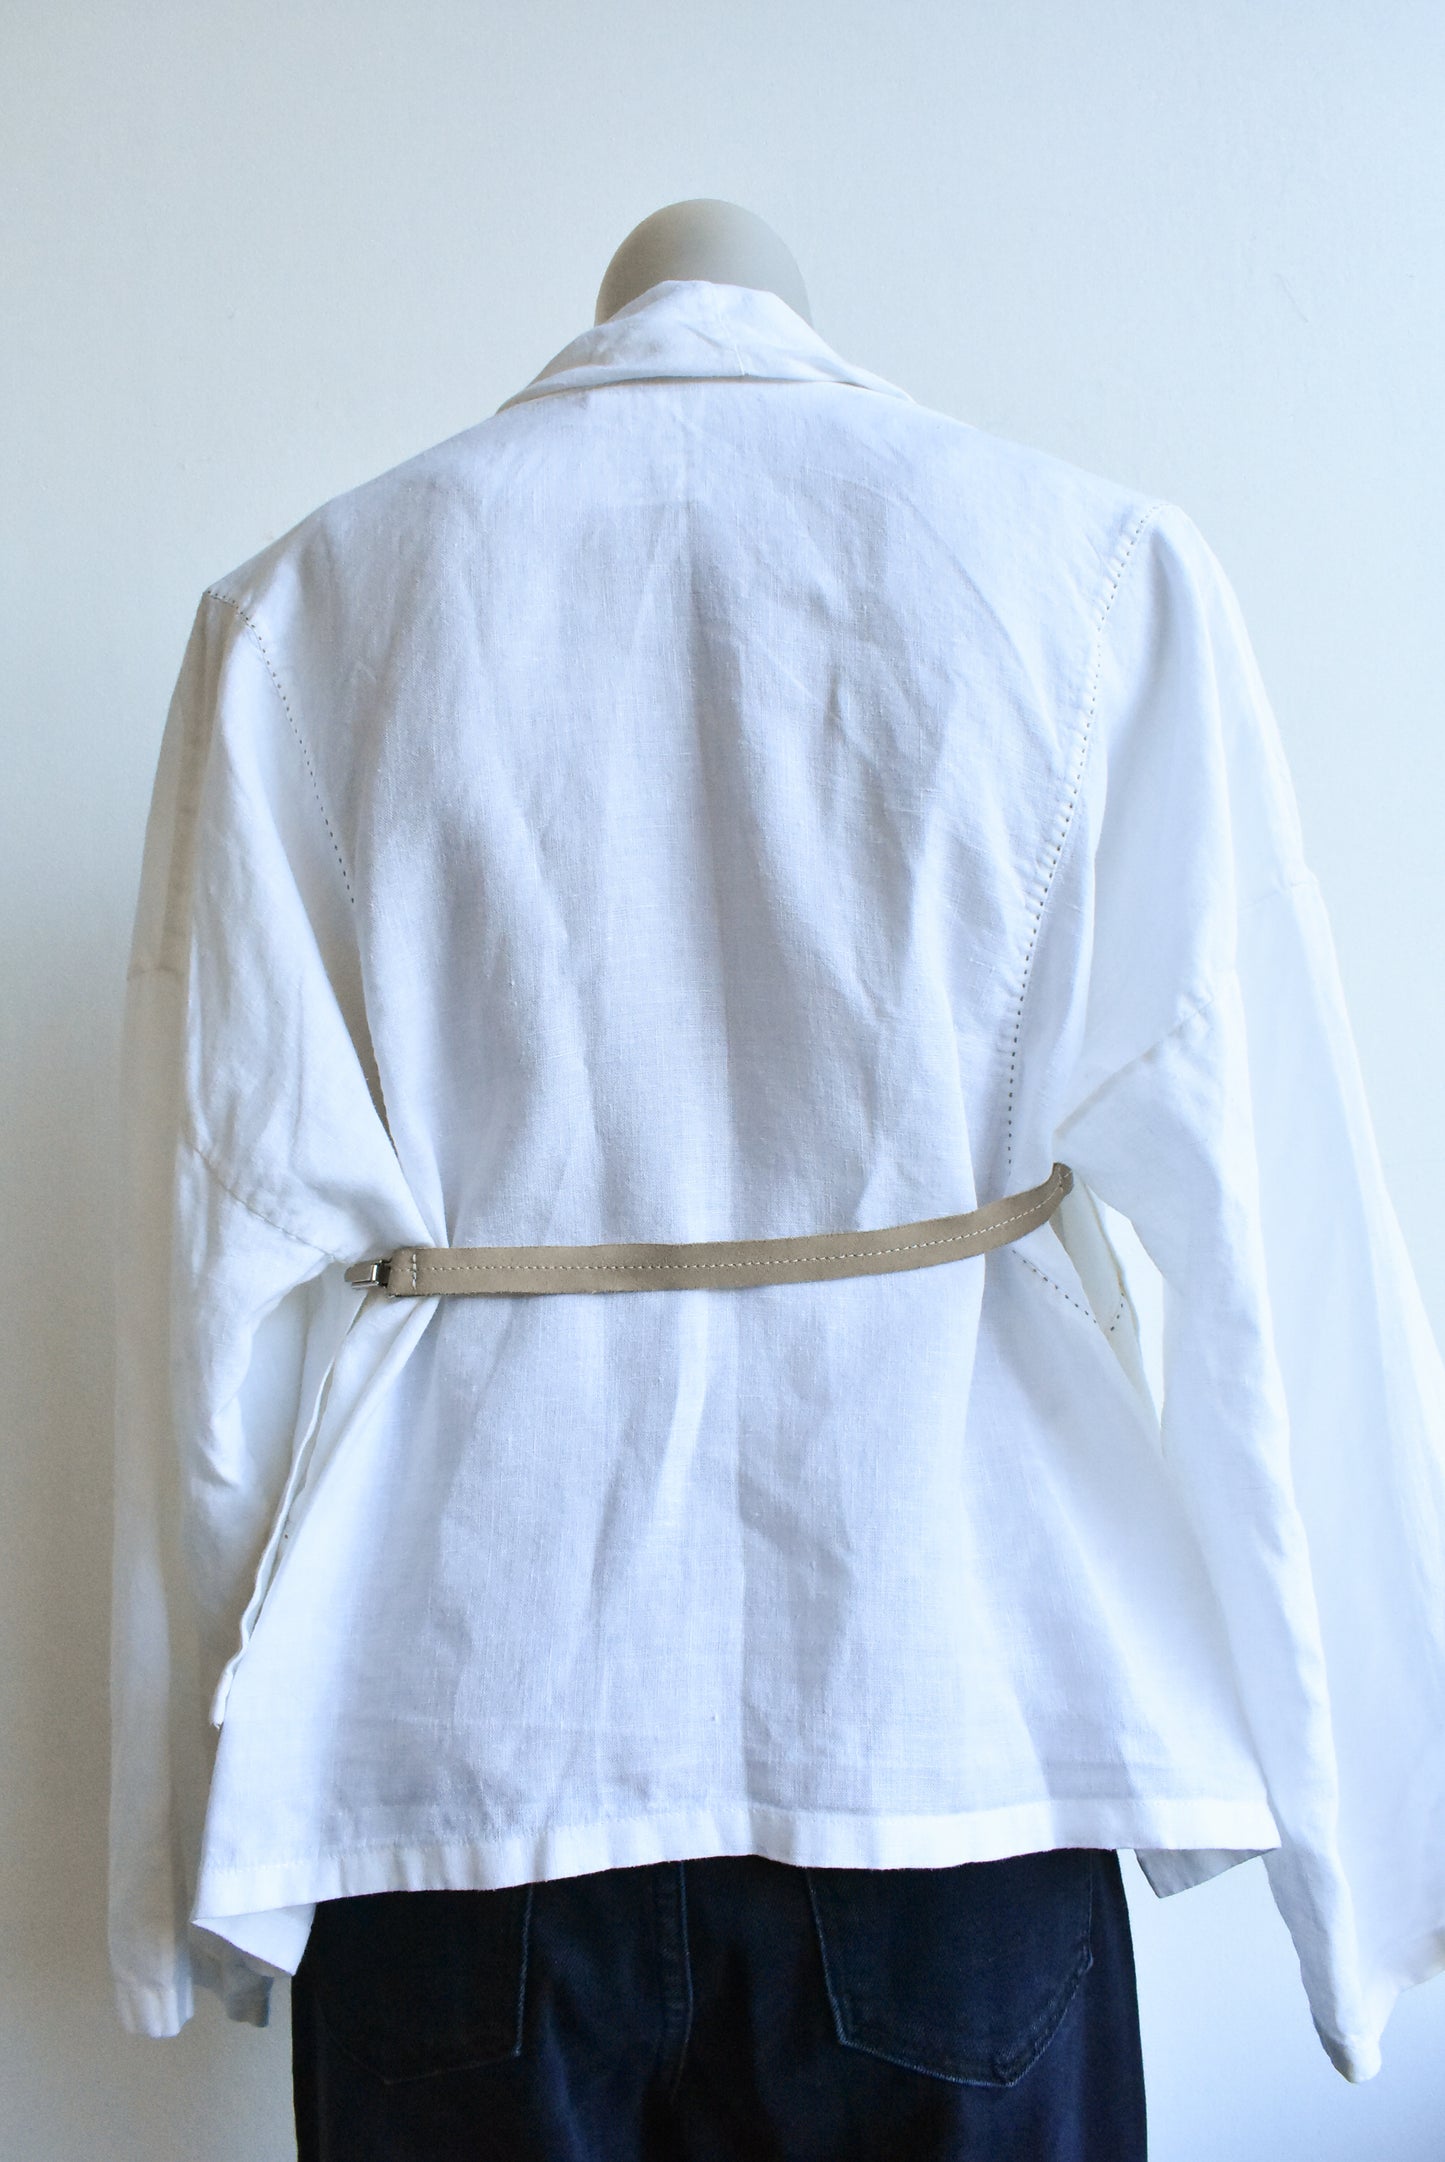 Crea Concept white linen shrug, 42